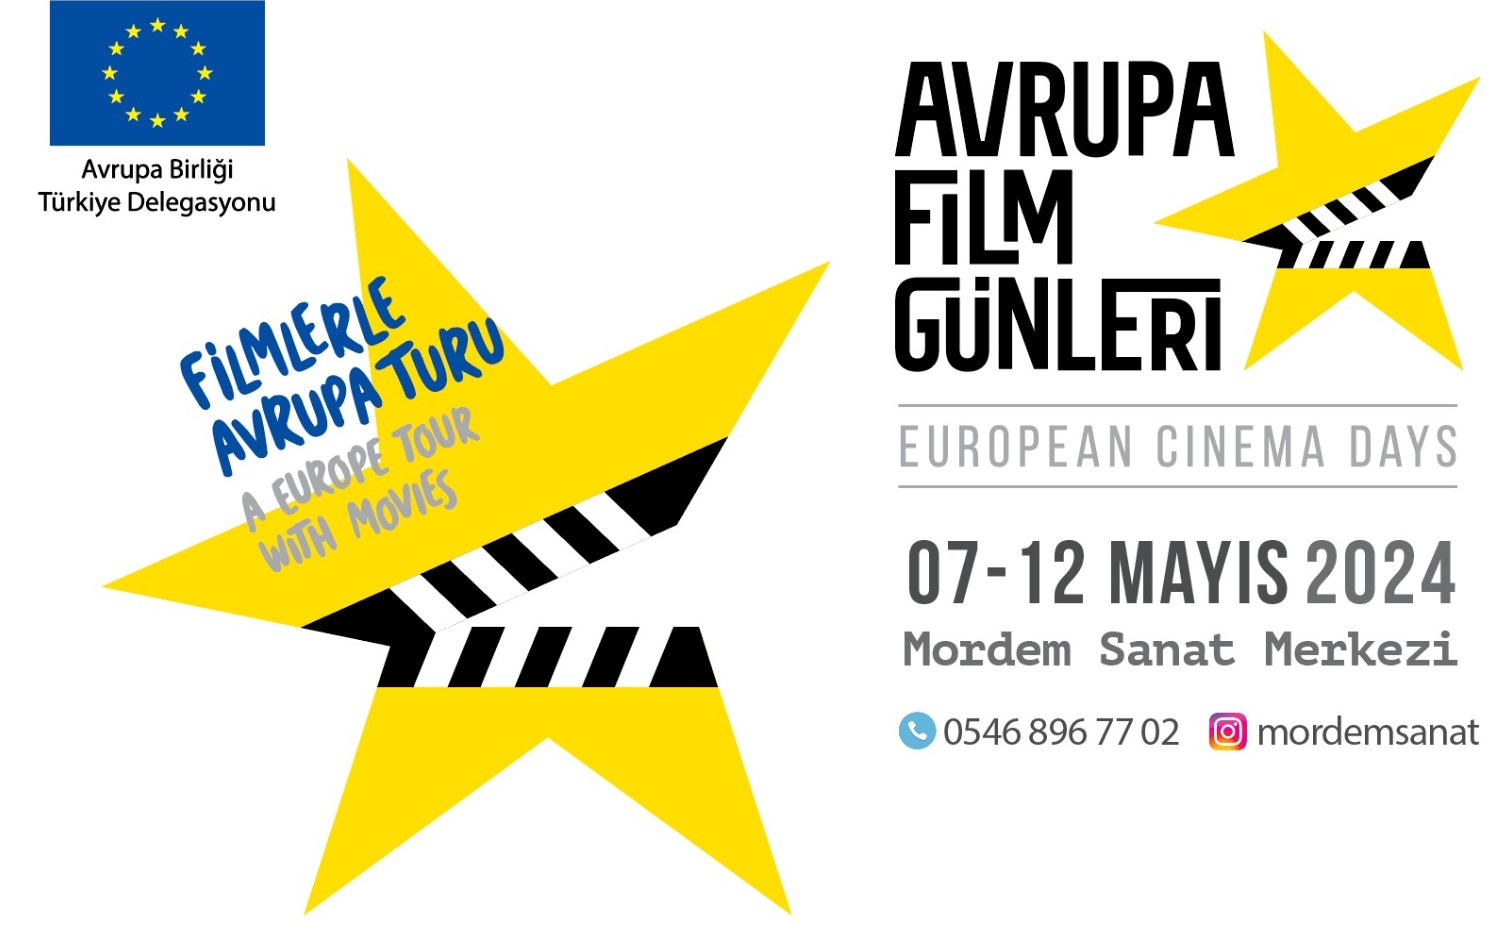 Avrupa filmleri Diyarbakırlı sinemaseverlerle buluşacak